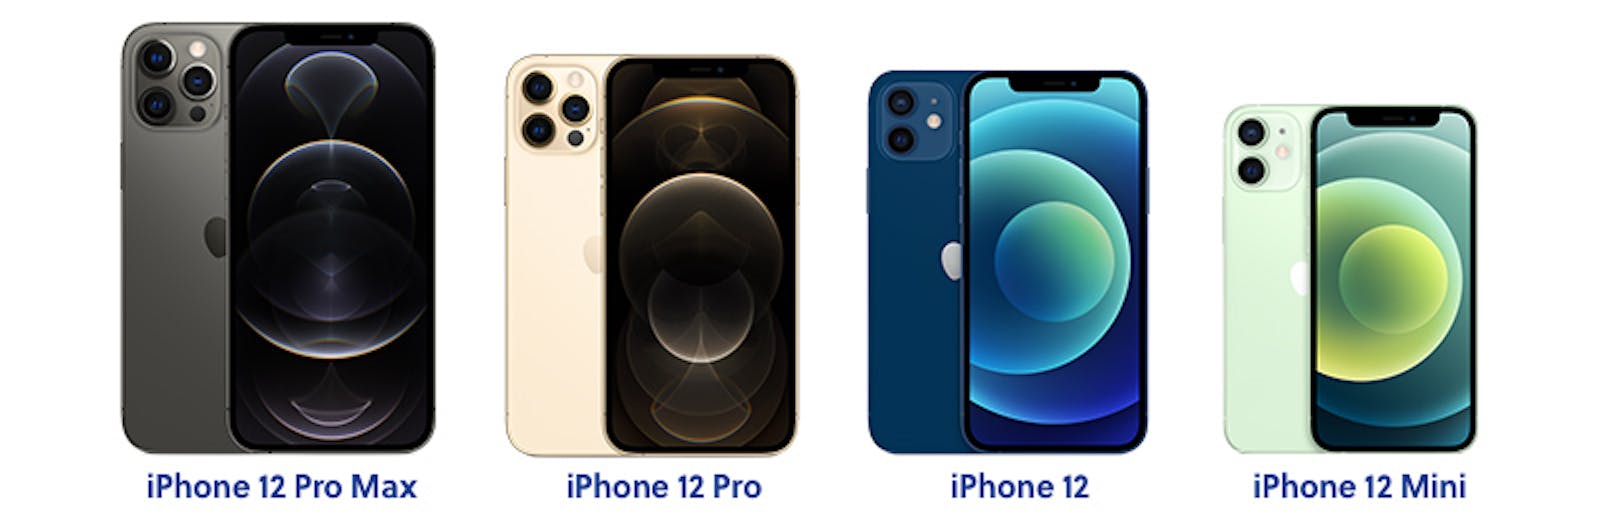 Apple iPhone 12-serie vergelijking